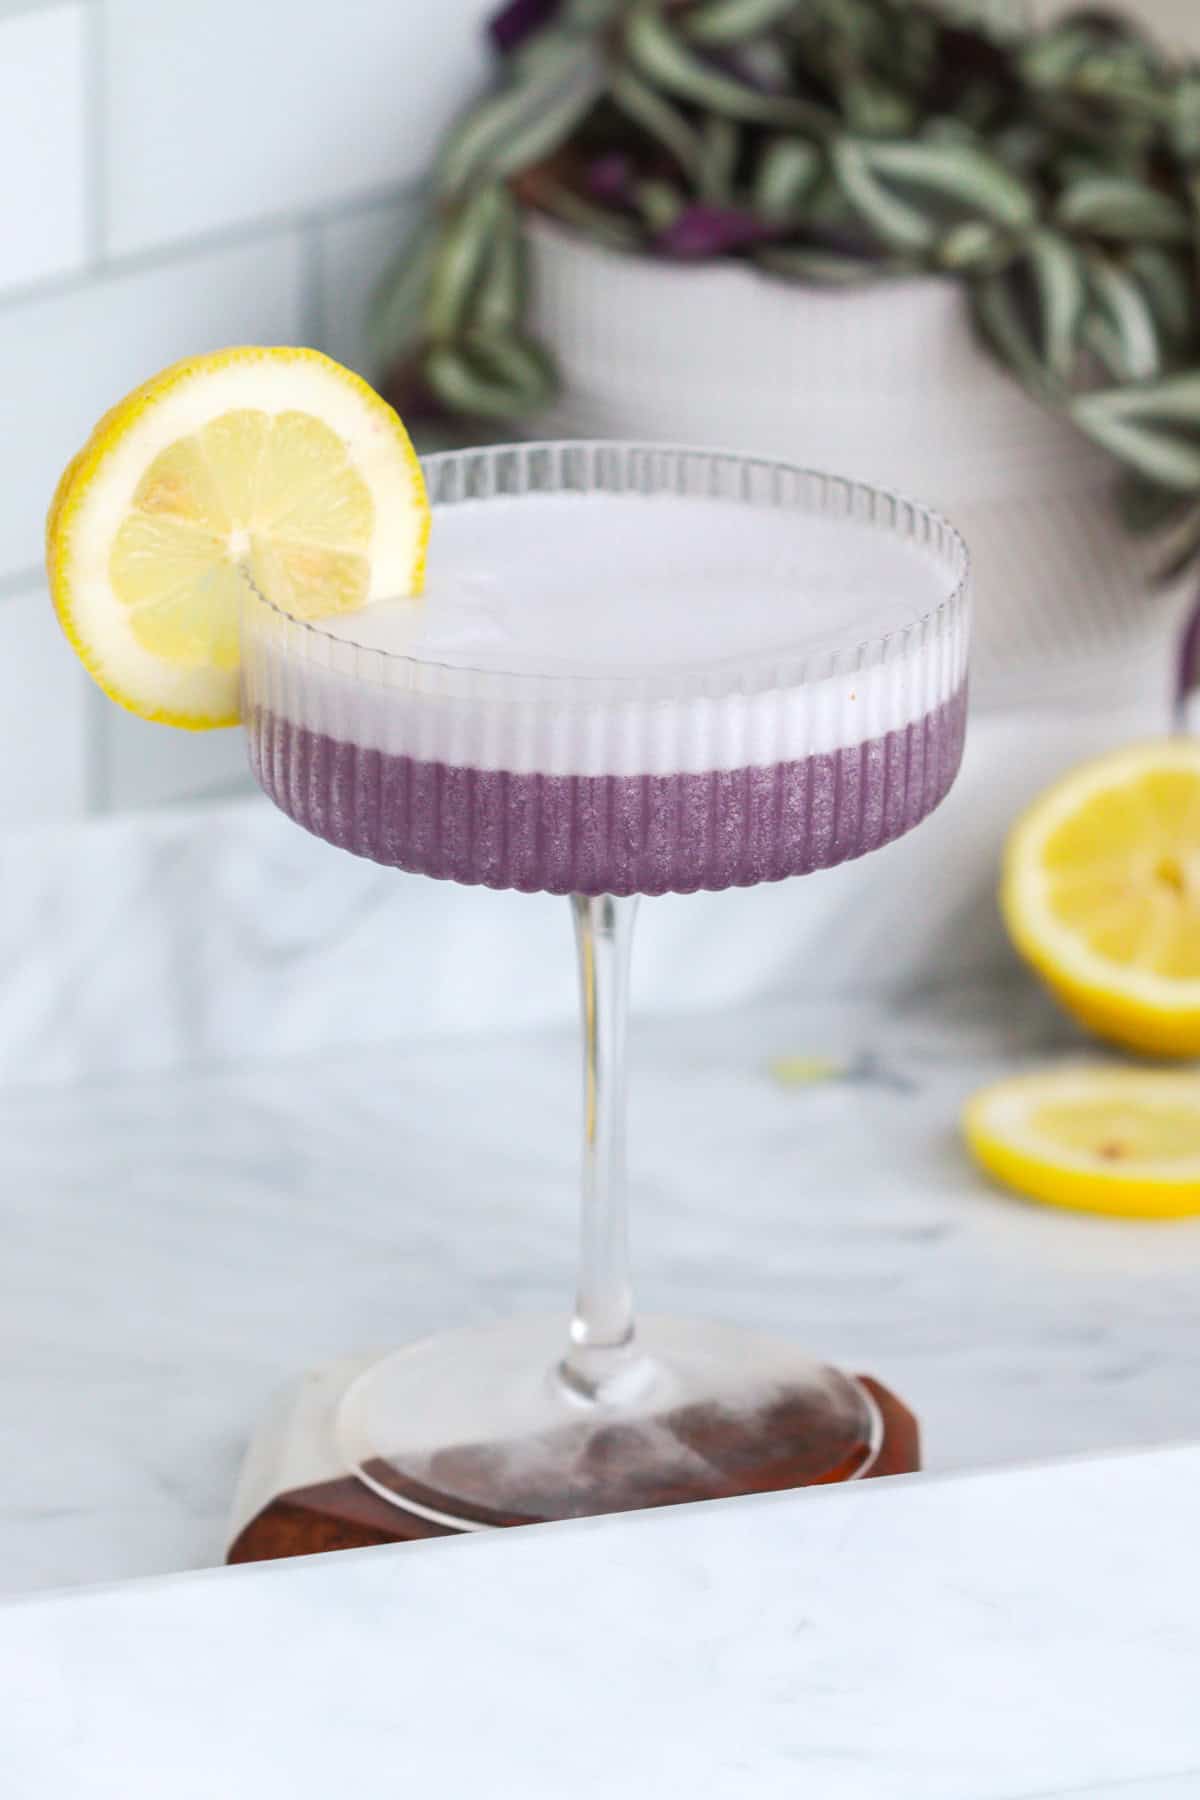 Violet lady cocktail with creme de violette and lemon wheel.